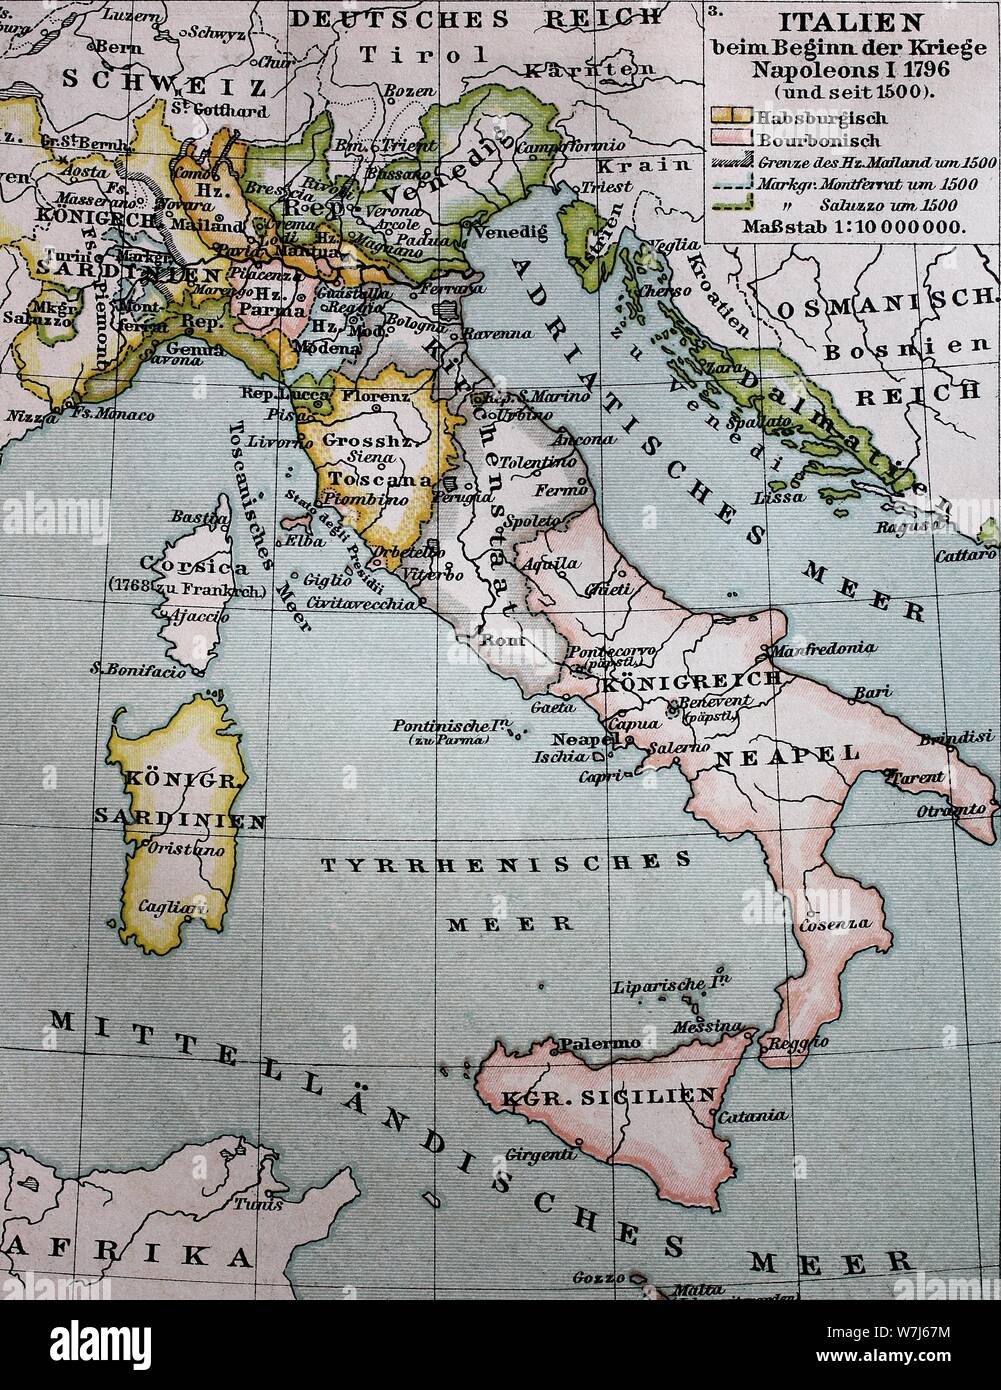 Karte von Italien von 1500 zu Beginn der Kriege Napoleons I., 1796, historische Darstellung, Italien Stockfoto